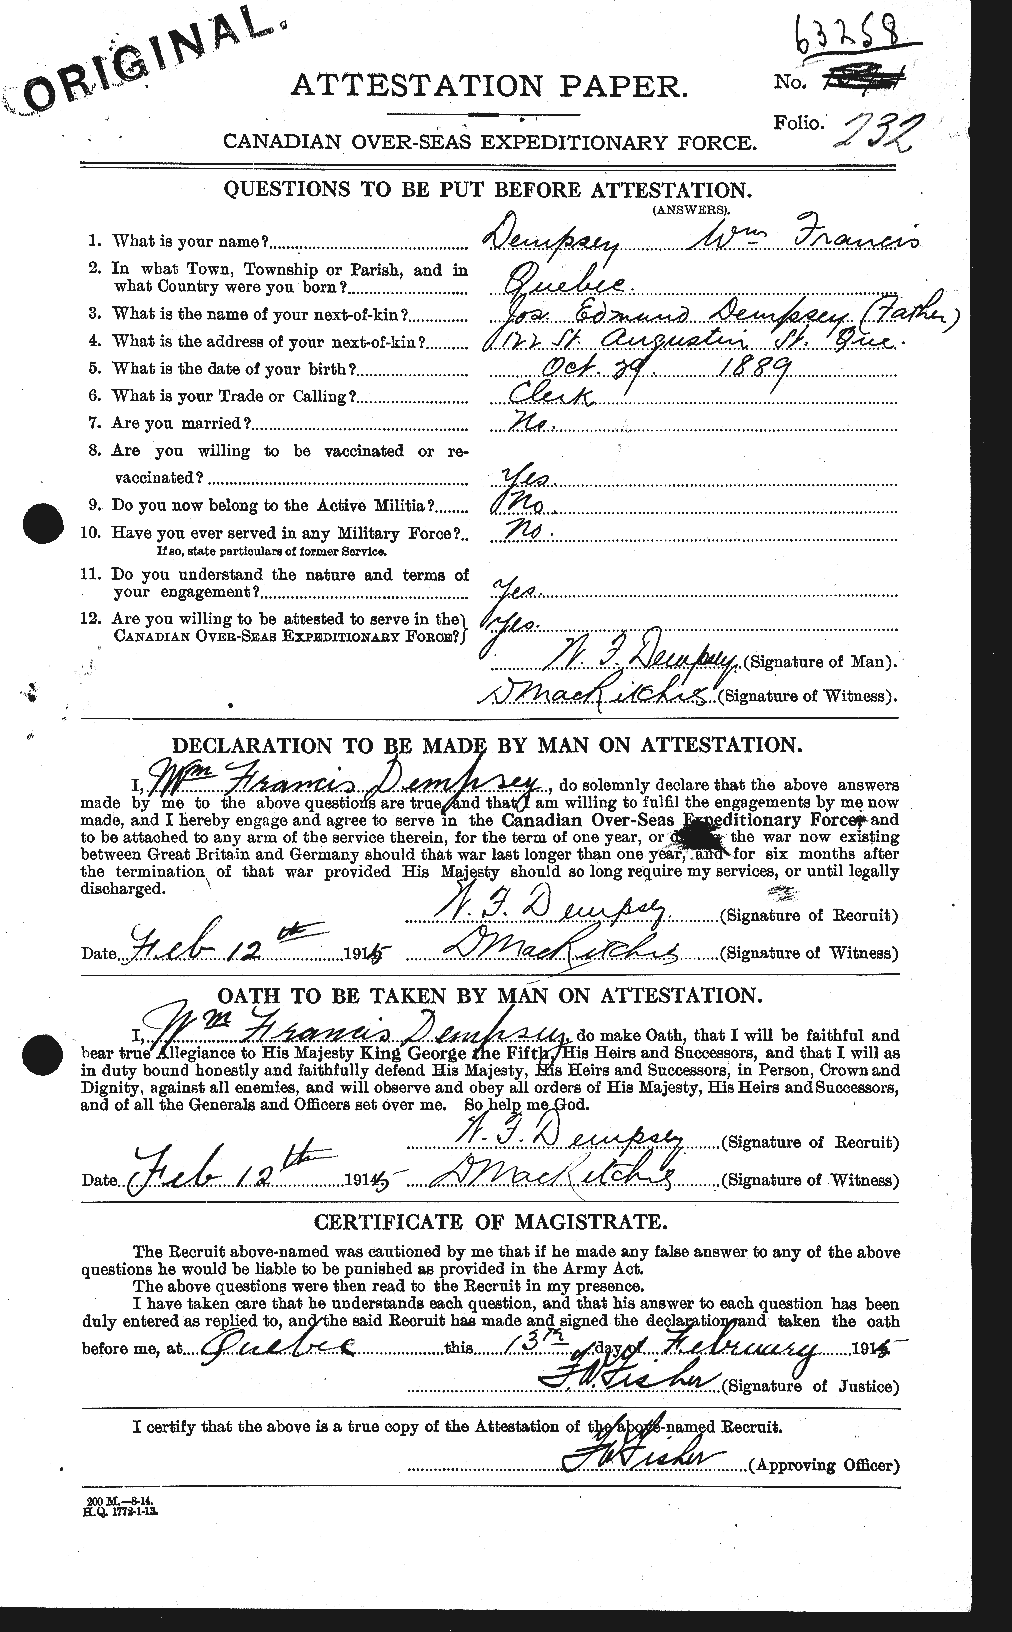 Dossiers du Personnel de la Première Guerre mondiale - CEC 286930a